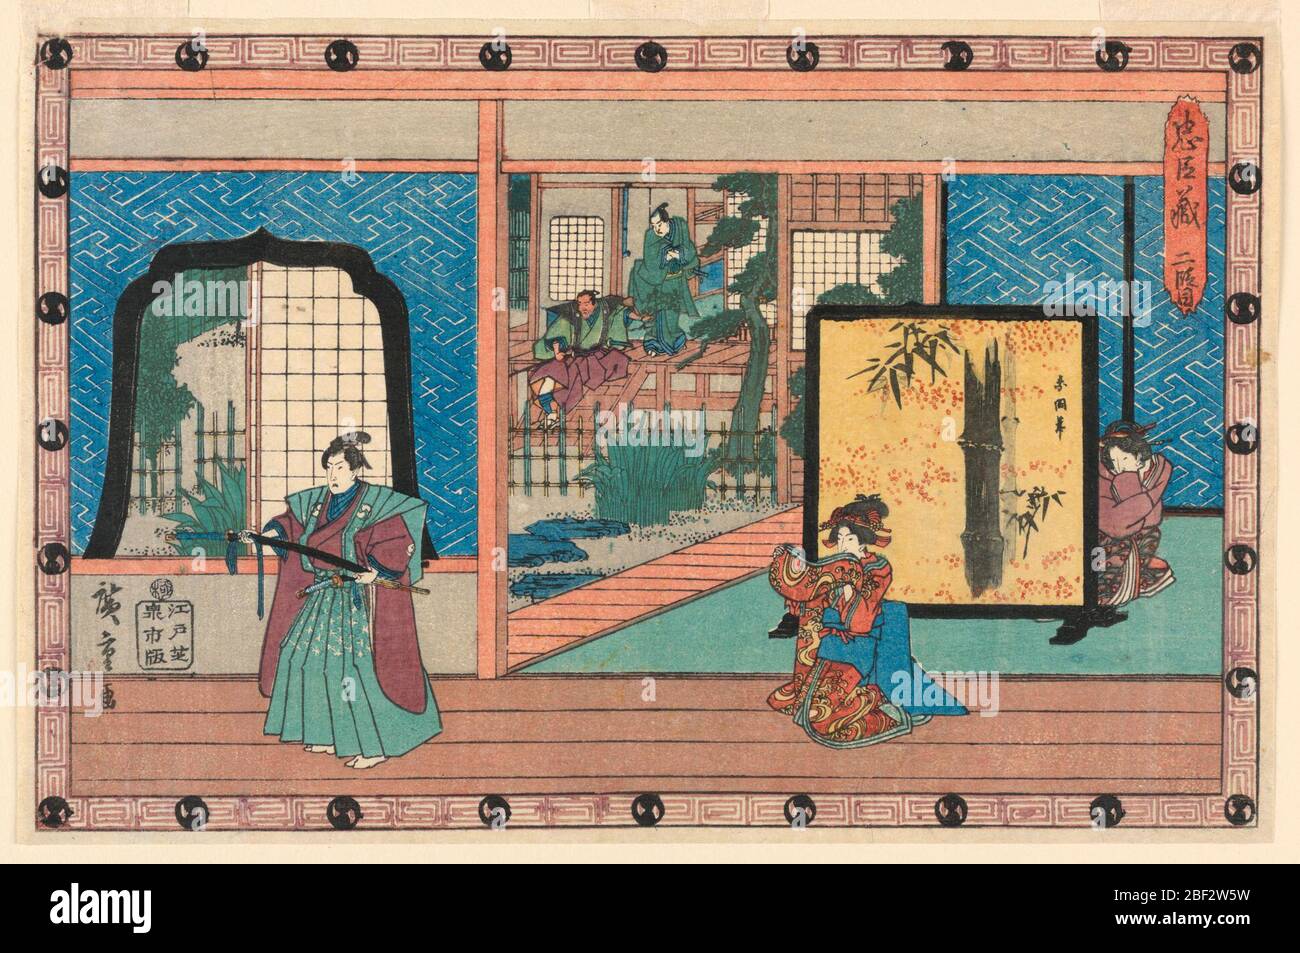 Stage Design Act II pour la Chushingura. Format horizontal. Un ensemble de scène montre l'intérieur d'une maison, avec la figure d'une samouraï et de pétrir femme. À droite, une femme s'agenouille derrière un écran peint. Jardin avec deux figures sur un porche, arrière-plan gauche. Titre, en haut à droite. Banque D'Images